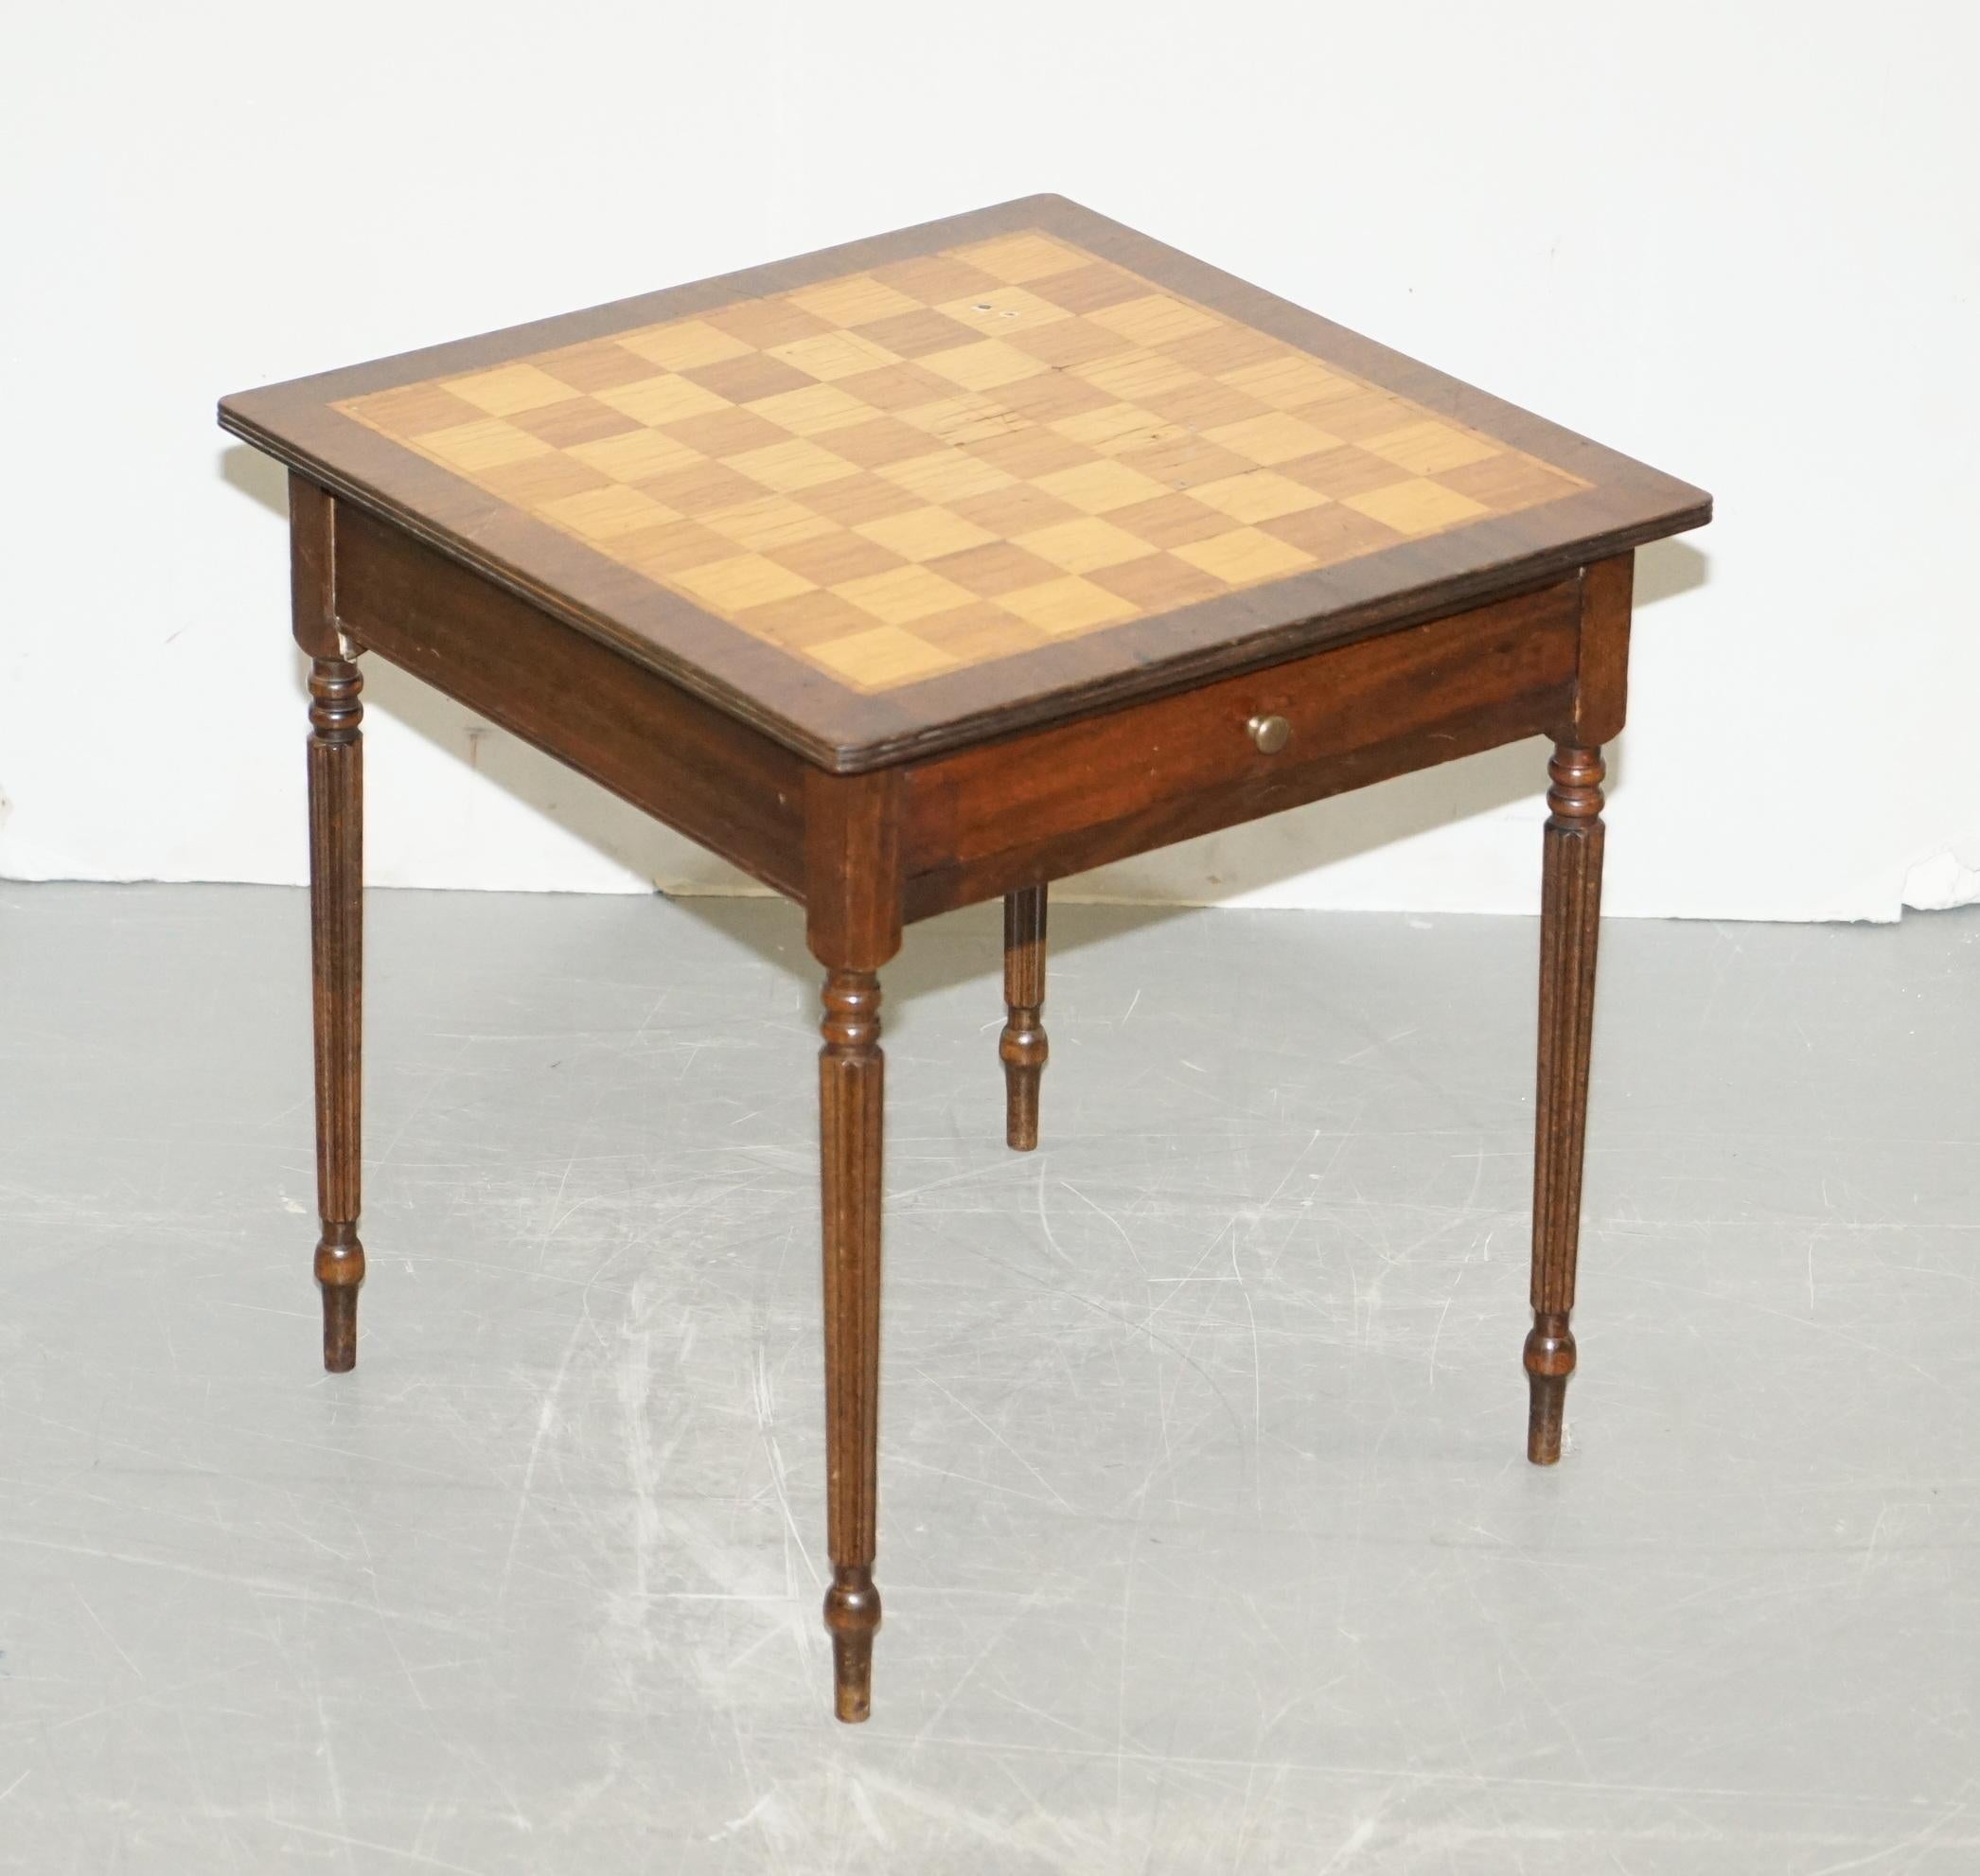 Nous sommes ravis d'offrir à la vente cette belle table de jeu d'échecs vintage en marqueterie

Un très beau meuble bien fait et fonctionnel, extrêmement décoratif, le dessus a un beau bois de noyer et d'acajou qui est magnifiquement incrusté, la